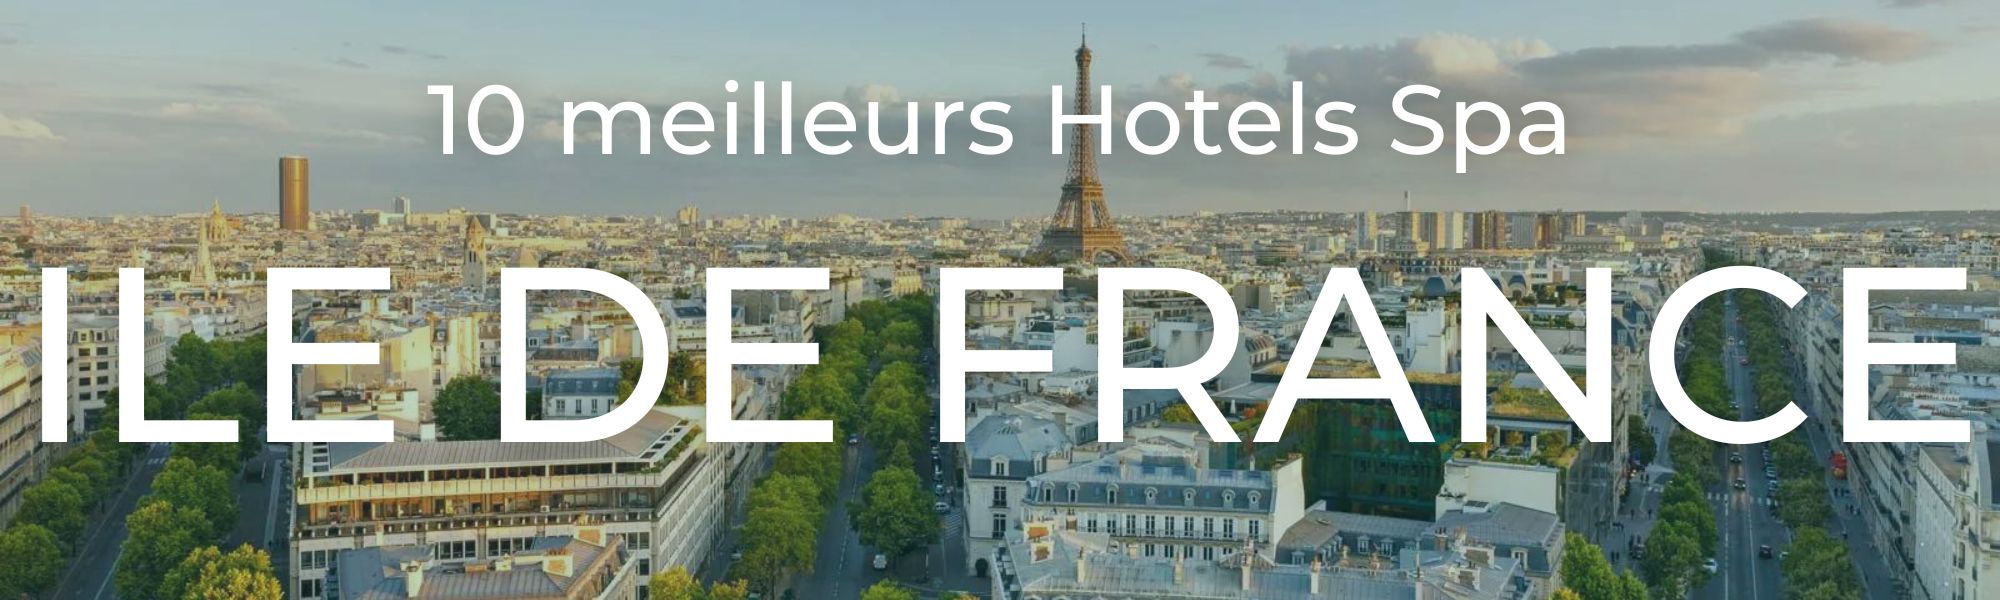 10 meilleurs hotels spa en ile de france (6)